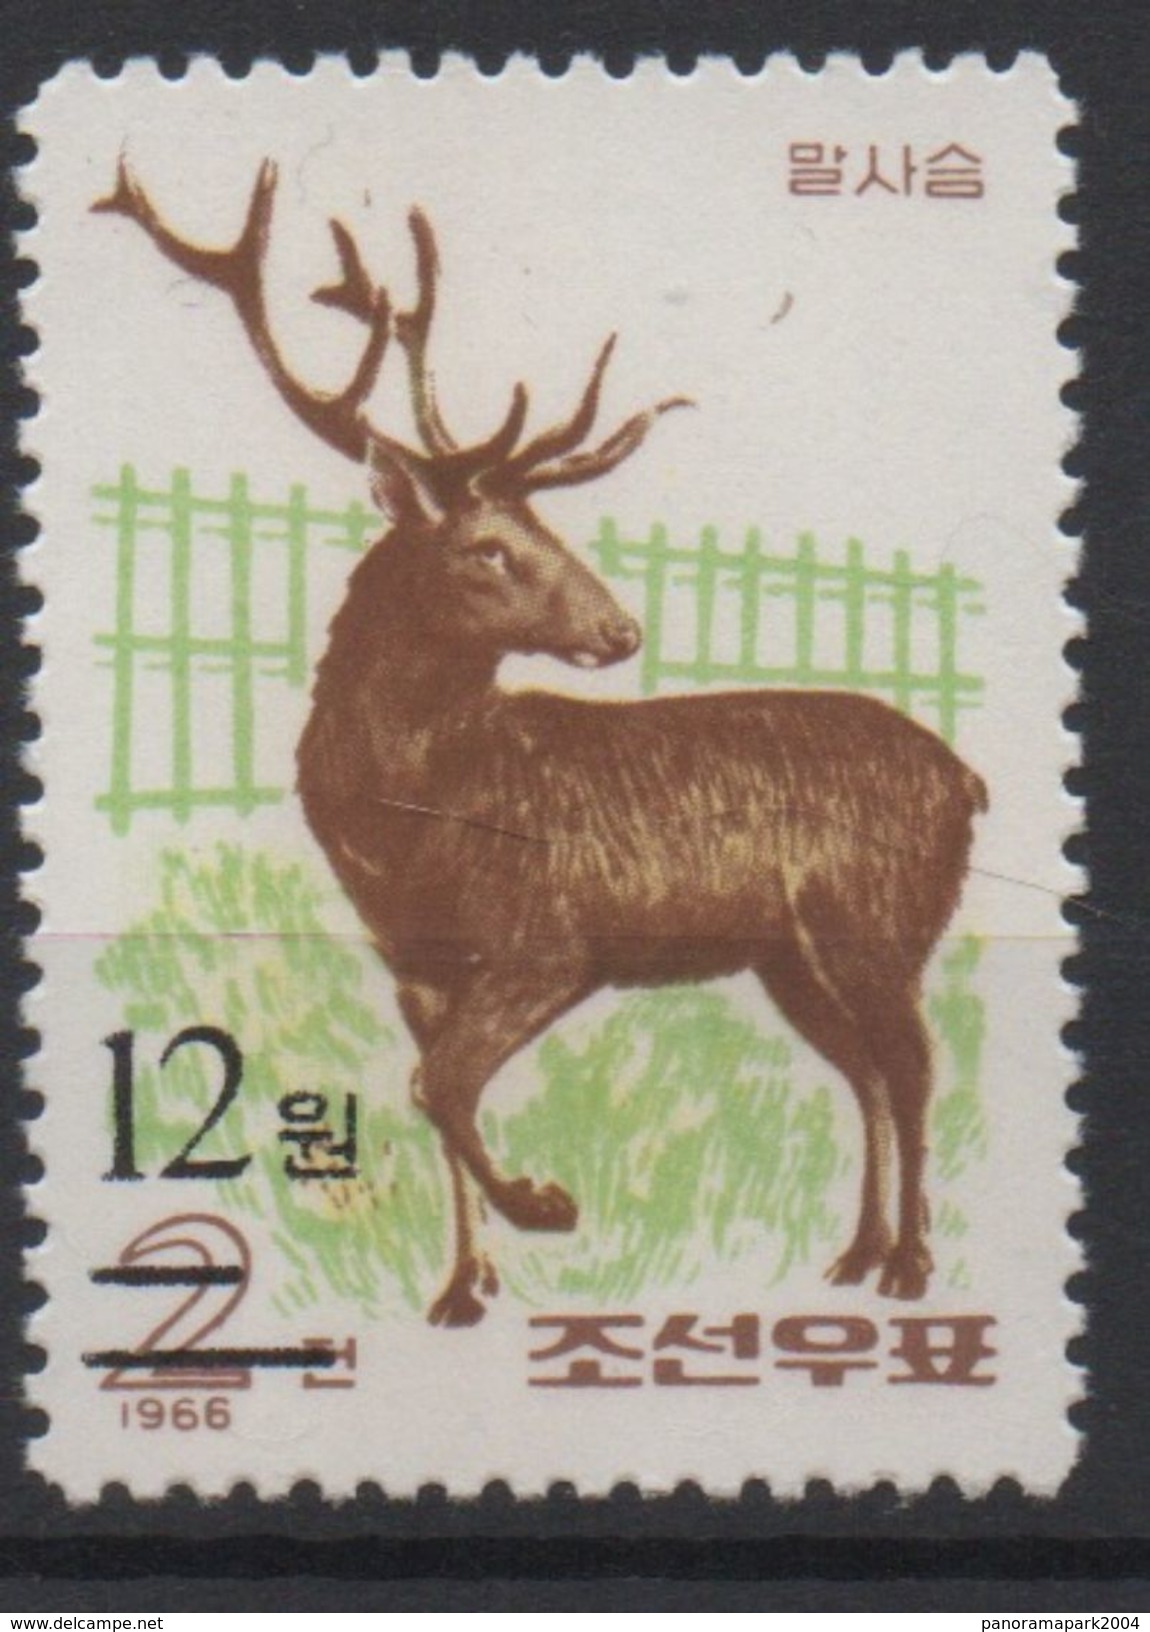 North Korea Corée Du Nord 2006 Mi. 5073 Surchargé OVERPRINT Faune Fauna Deer Hirsch Cerf MNH** RARE - Game